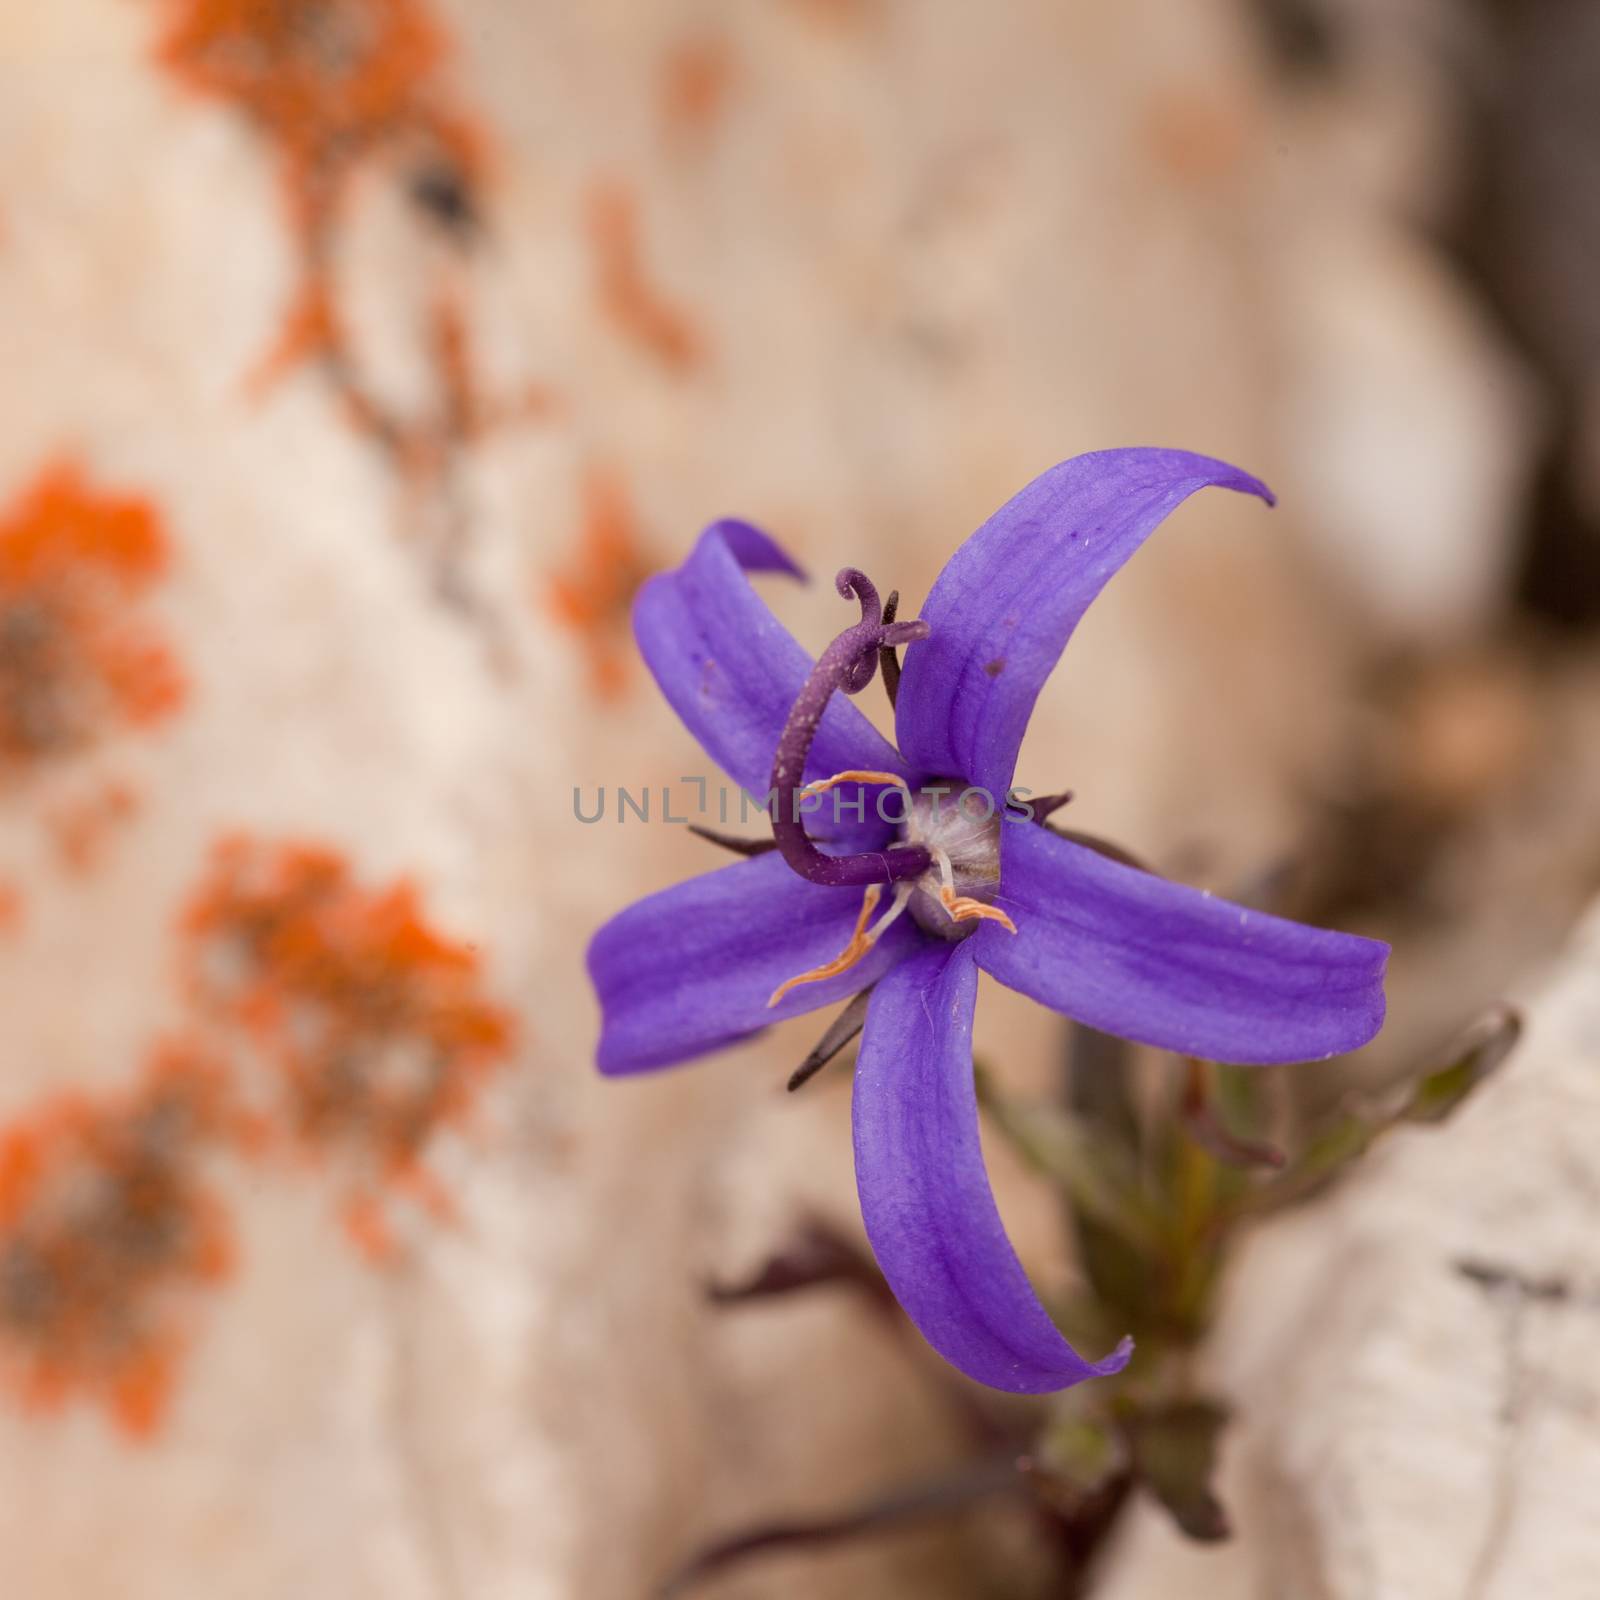 Alpine plant Inky Gentain Gentiana glauca flower by PiLens